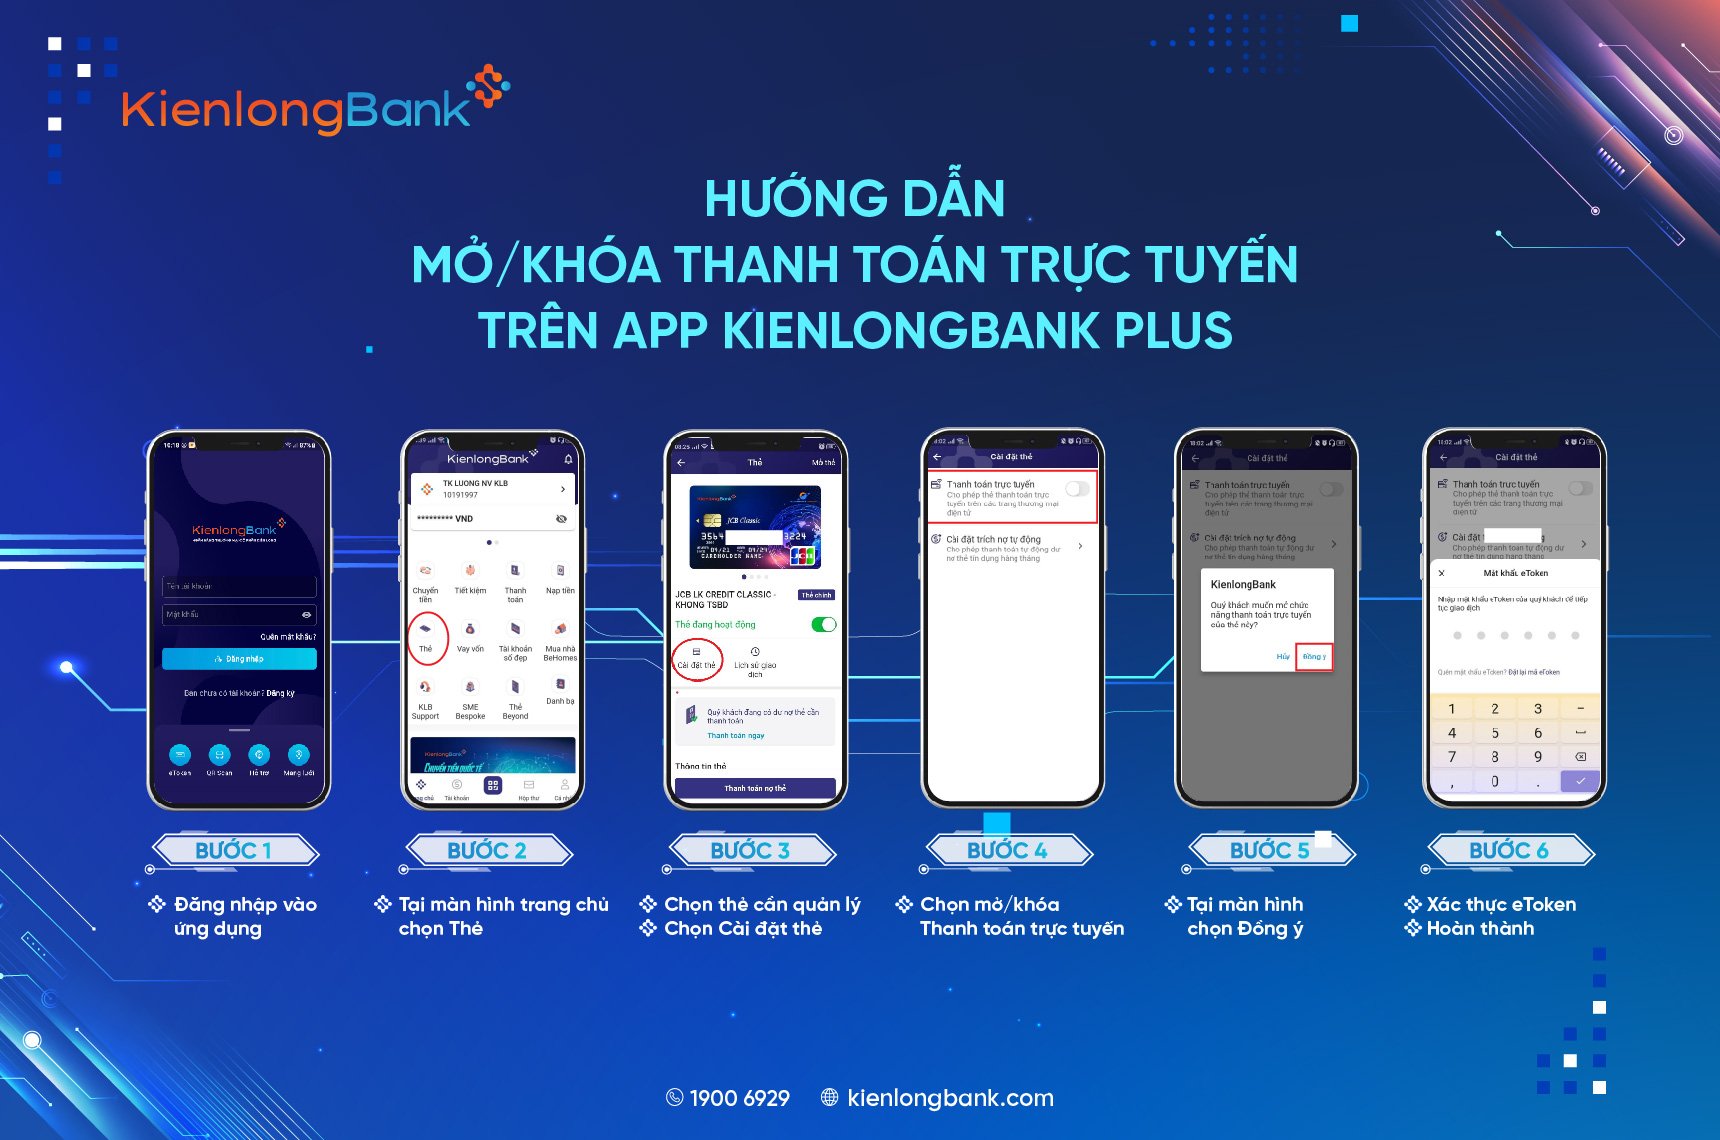 trai-nghiem-cac-tinh-nang-the-tren-app-kienlongbank-plus